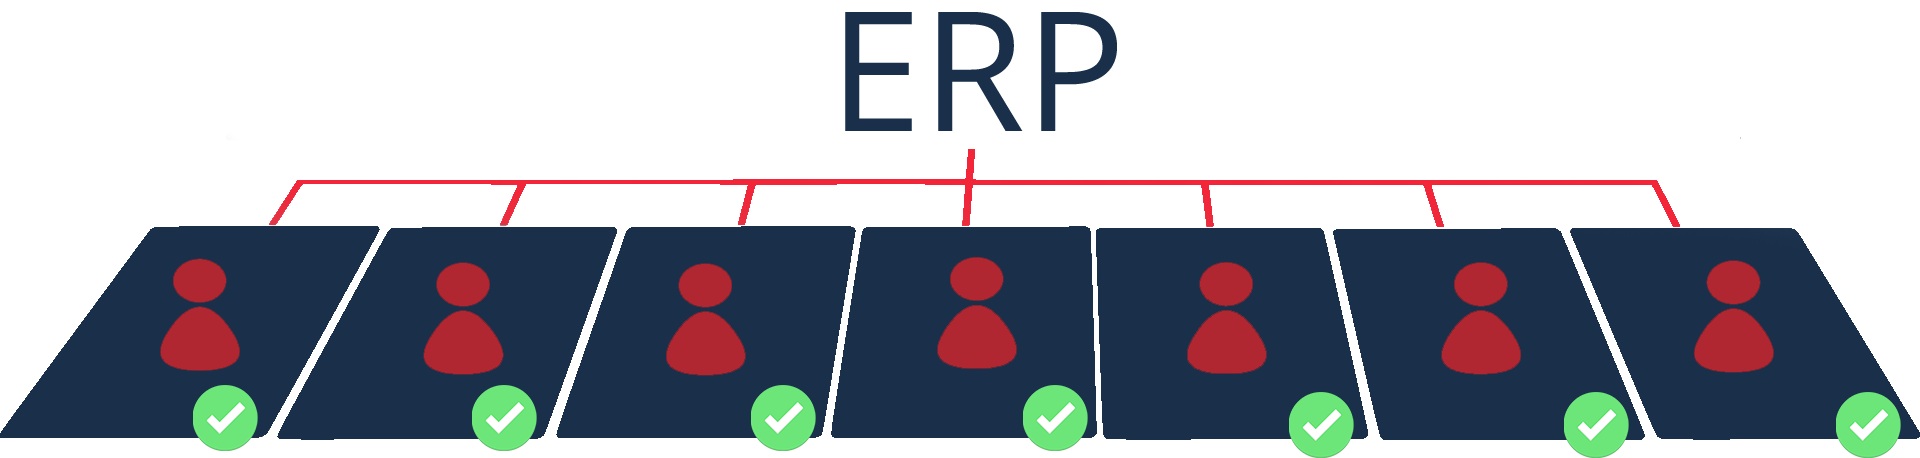 Grafika - pokazuje mogućnost primjene ERP-a u svim odjelima tvrtke